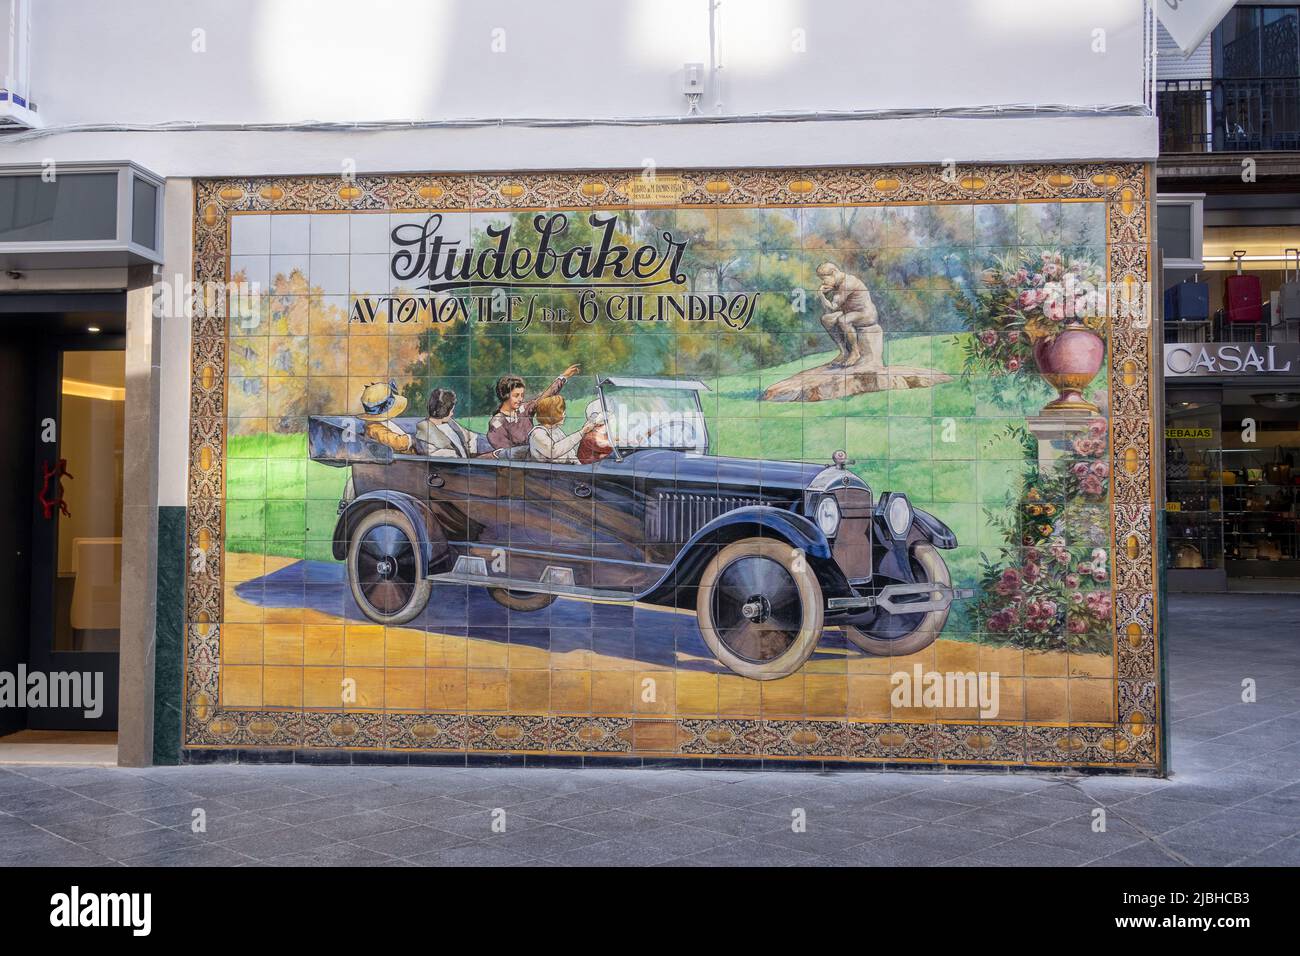 Publicité en carreaux de céramique pour les automobiles Studebaker sur la rue Tetuan, Calle Tetuán Séville Espagne faite en 1924 par Enrique Orce Mármol fait à la Manue Banque D'Images